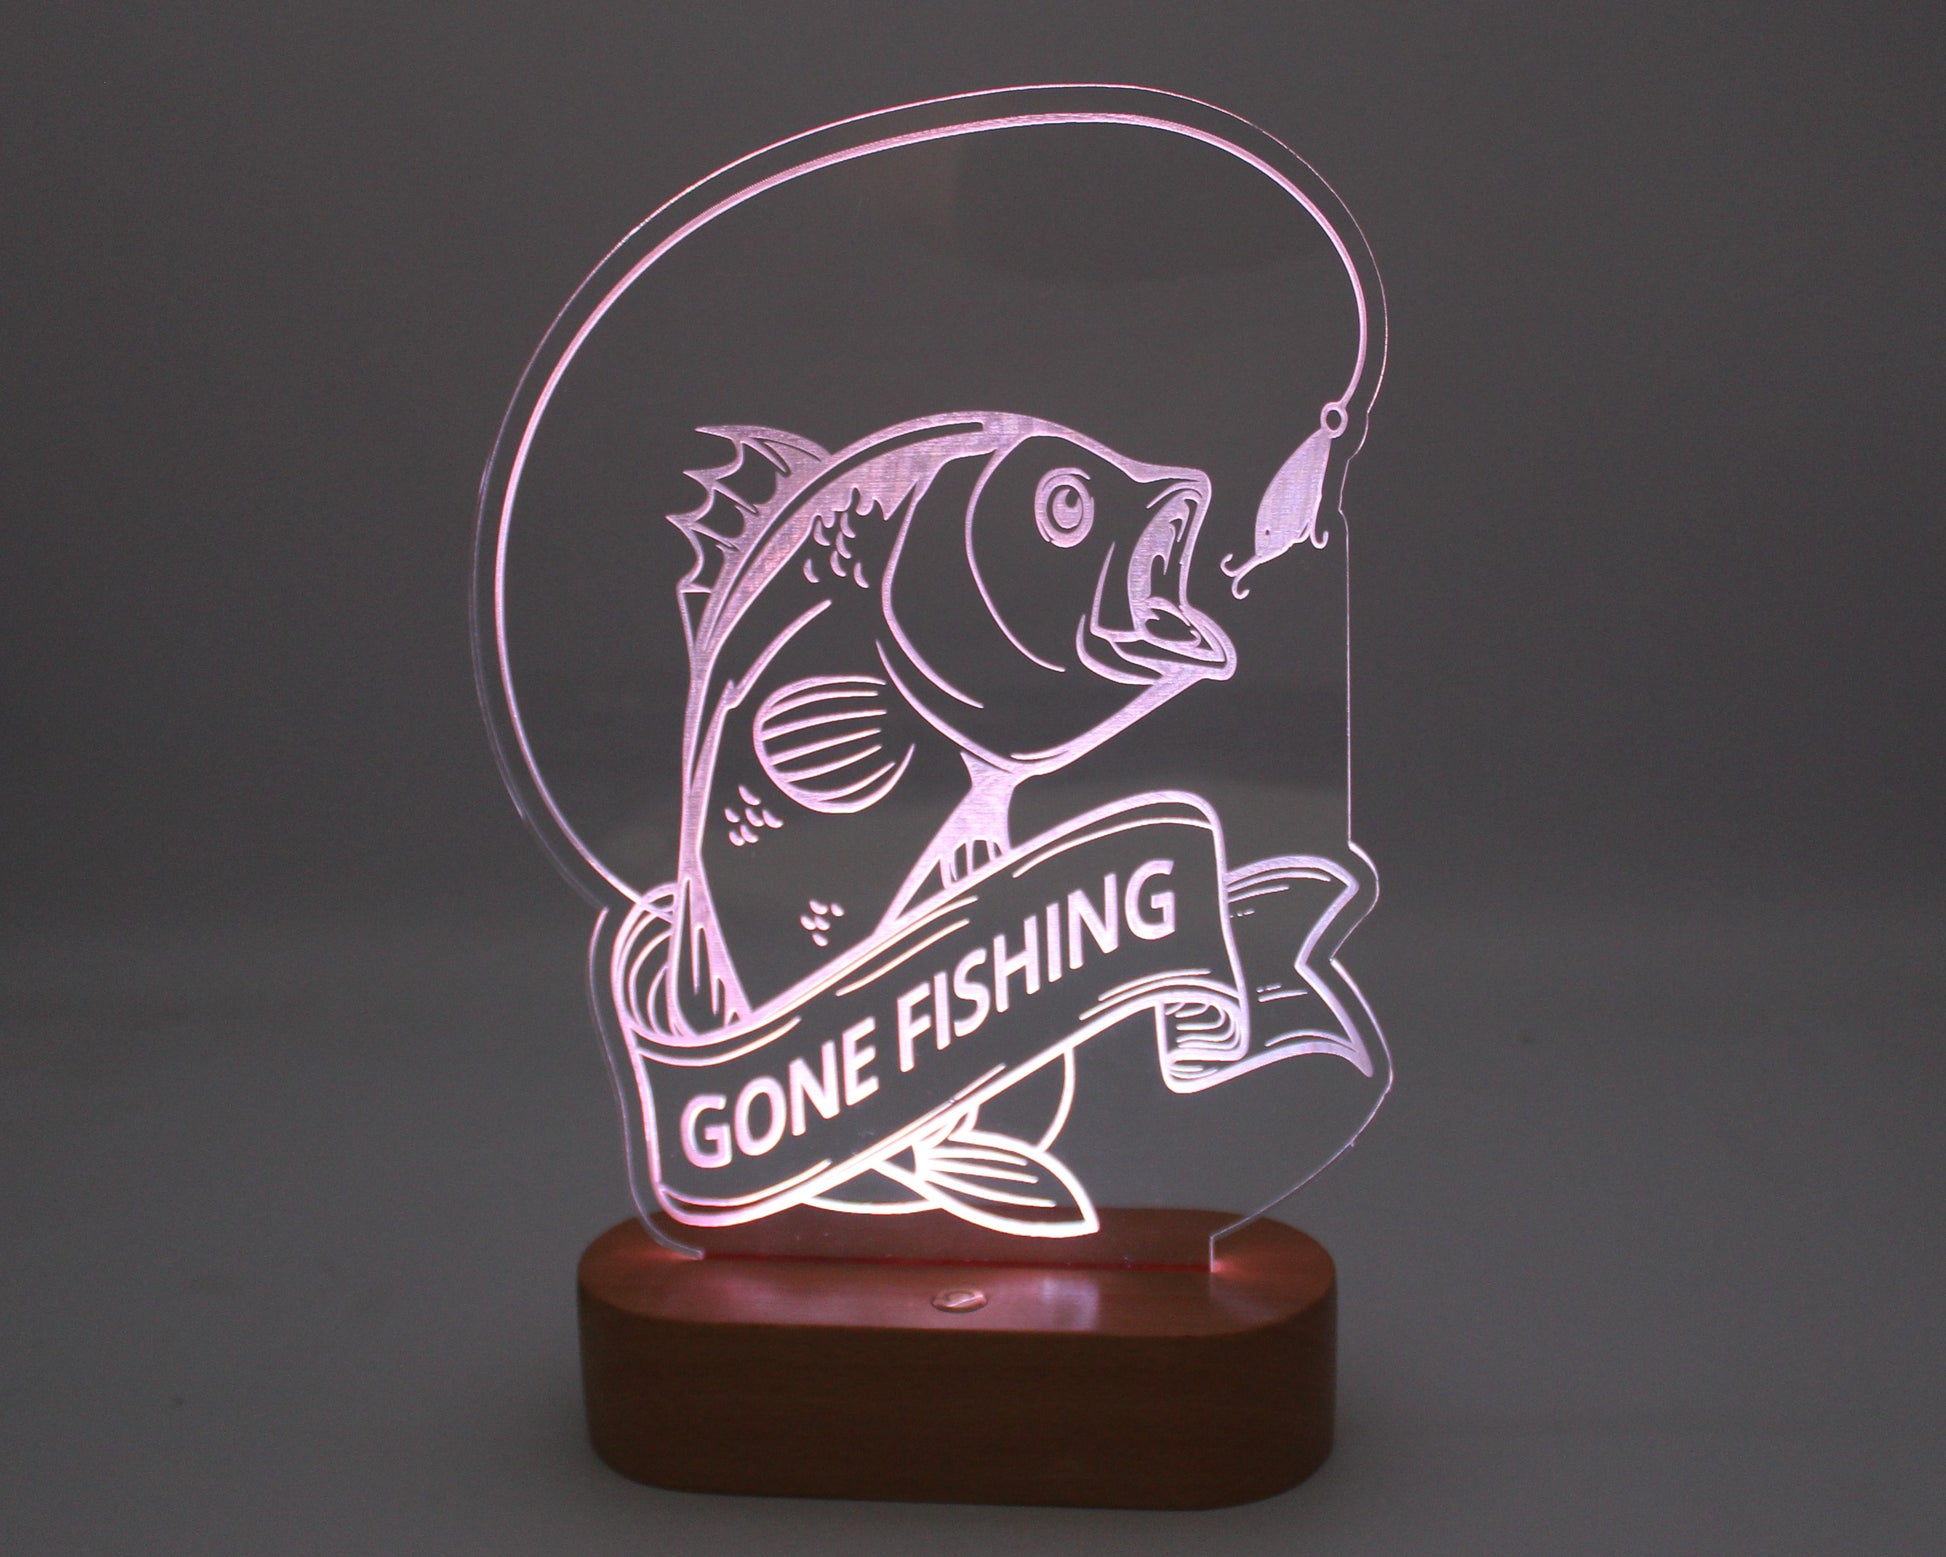 Fishing Night Light - Haisley Design